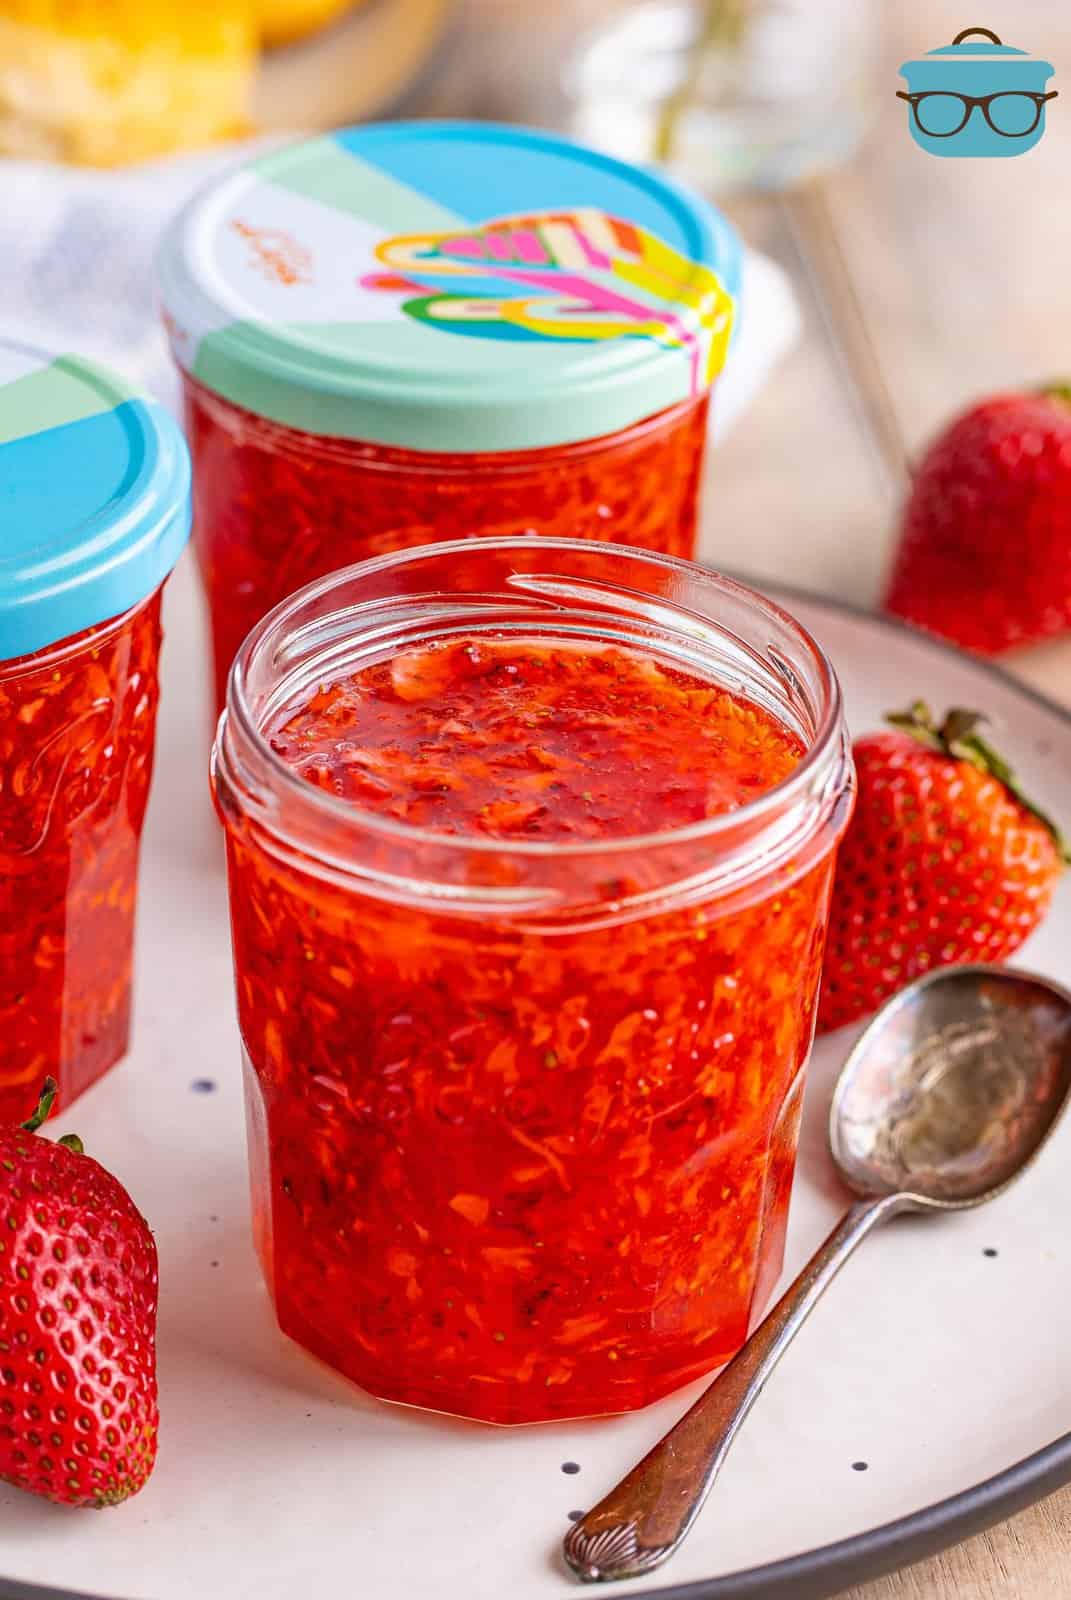 A jar of homemade freezer strawberry jam.